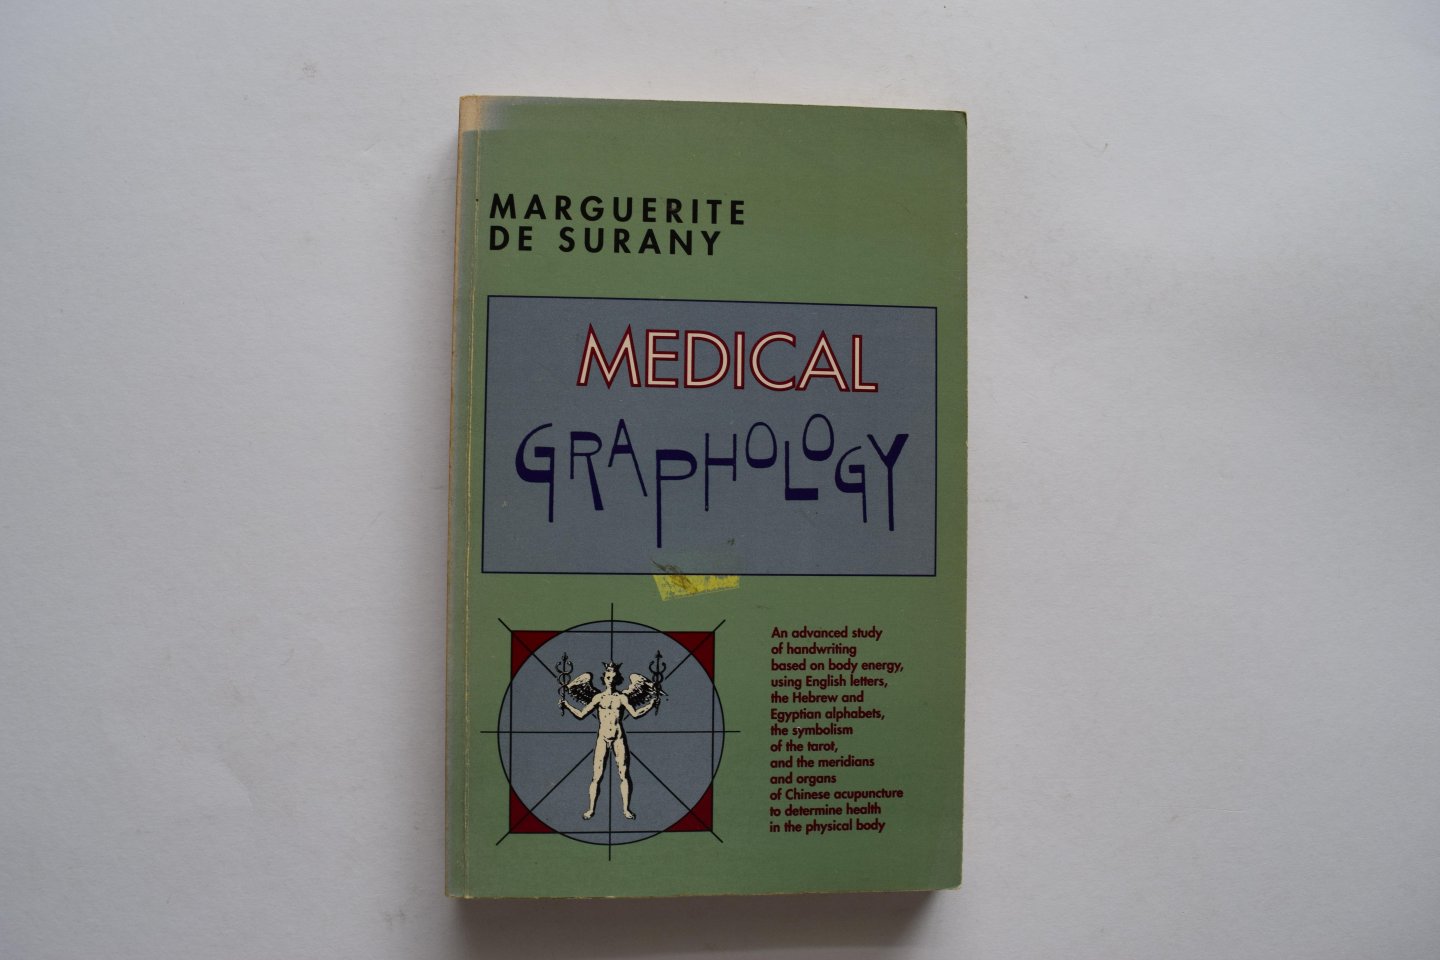 Marguerite de Surany - Medical graphology